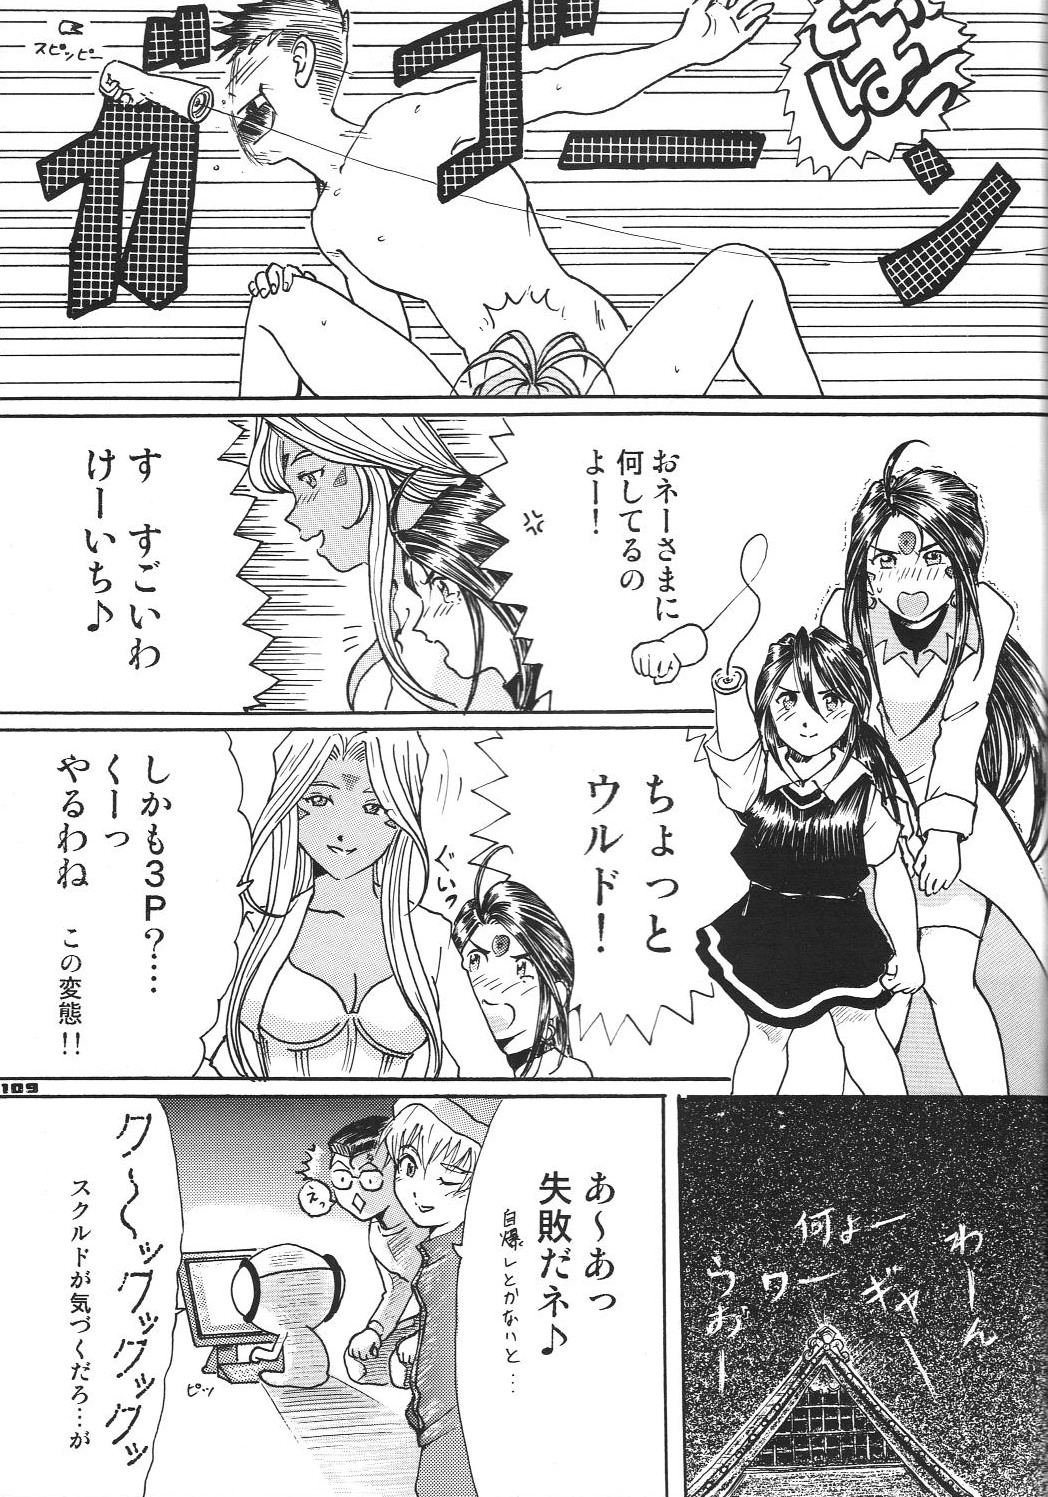 (サンクリ31) [RPGカンパニー2 (よろず)] Fujishima Spirits vol.6 (ああっ女神さまっ、サクラ大戦)